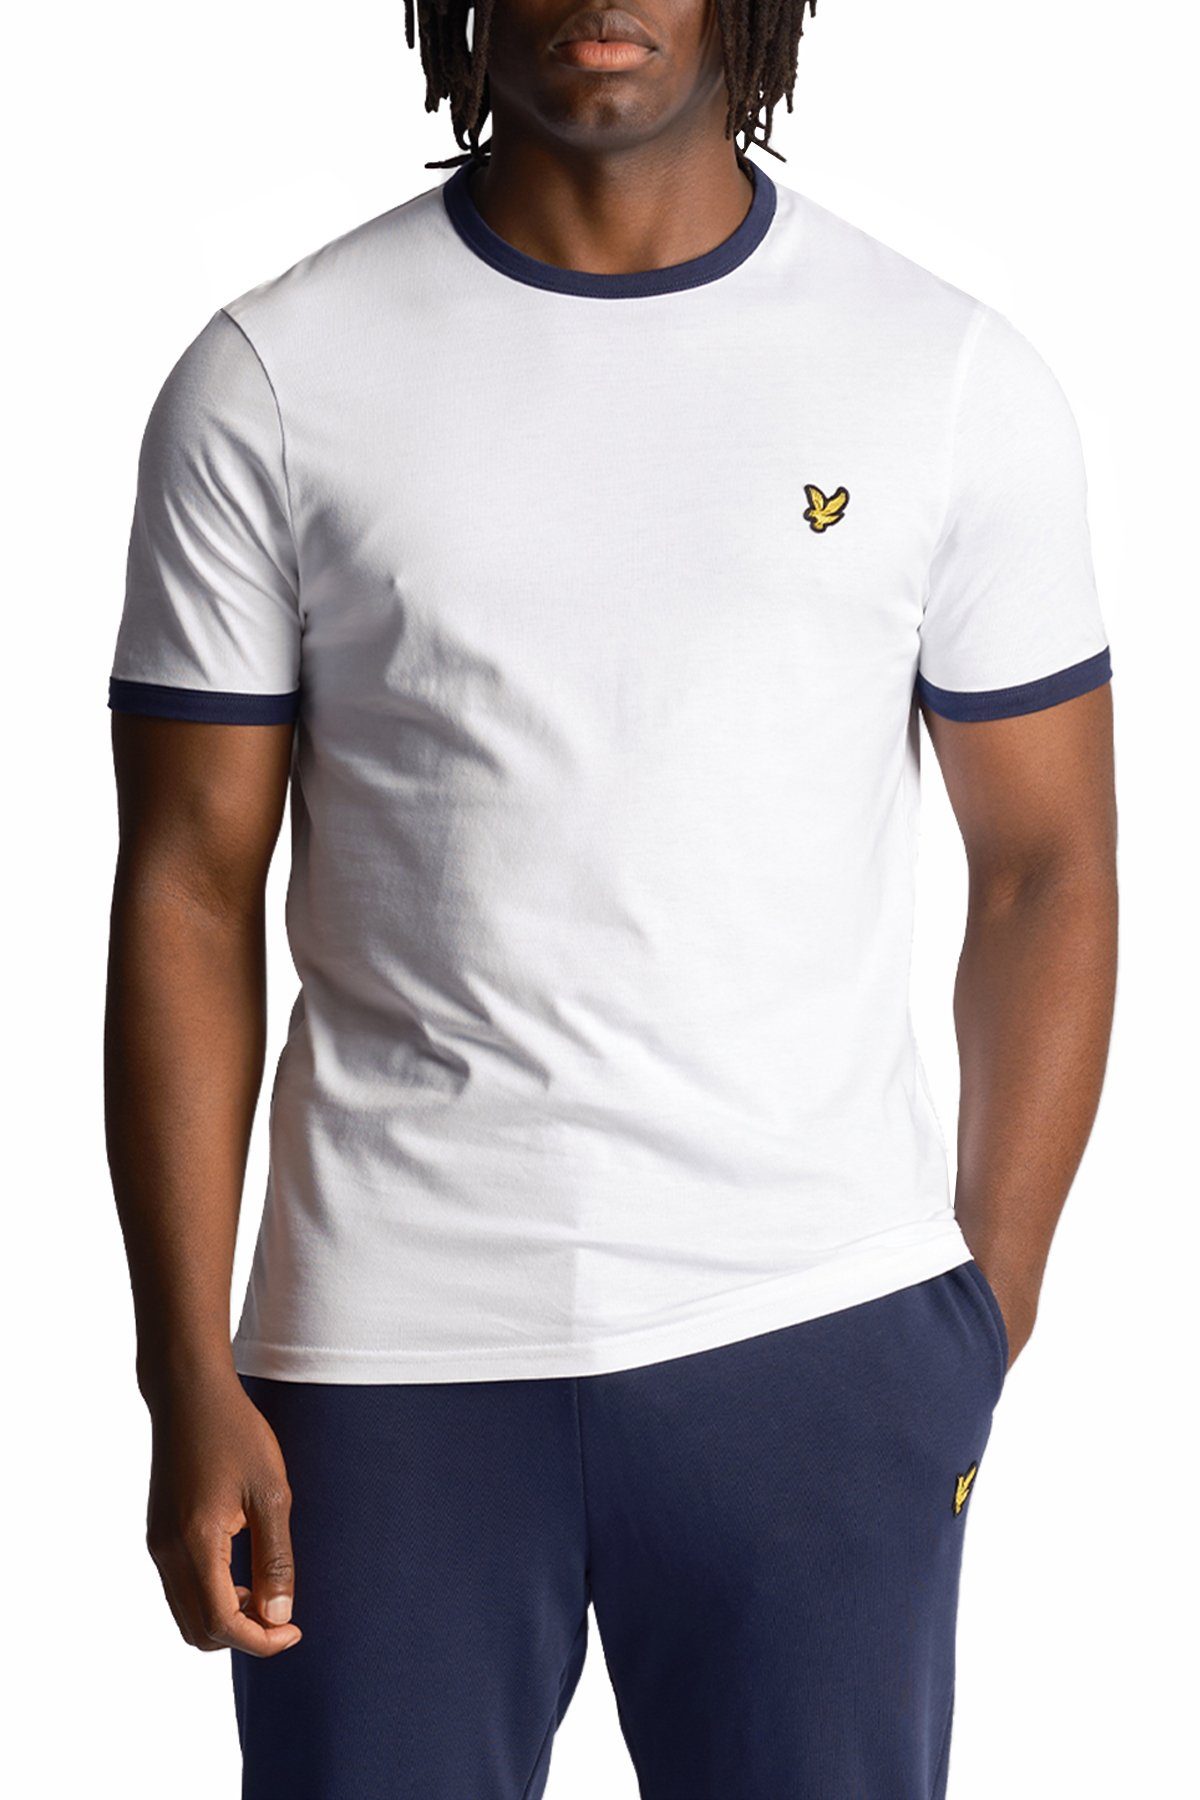 Lyle & Scott T-Shirt Mit Kontrastierender Zierleiste Weiß/Marine